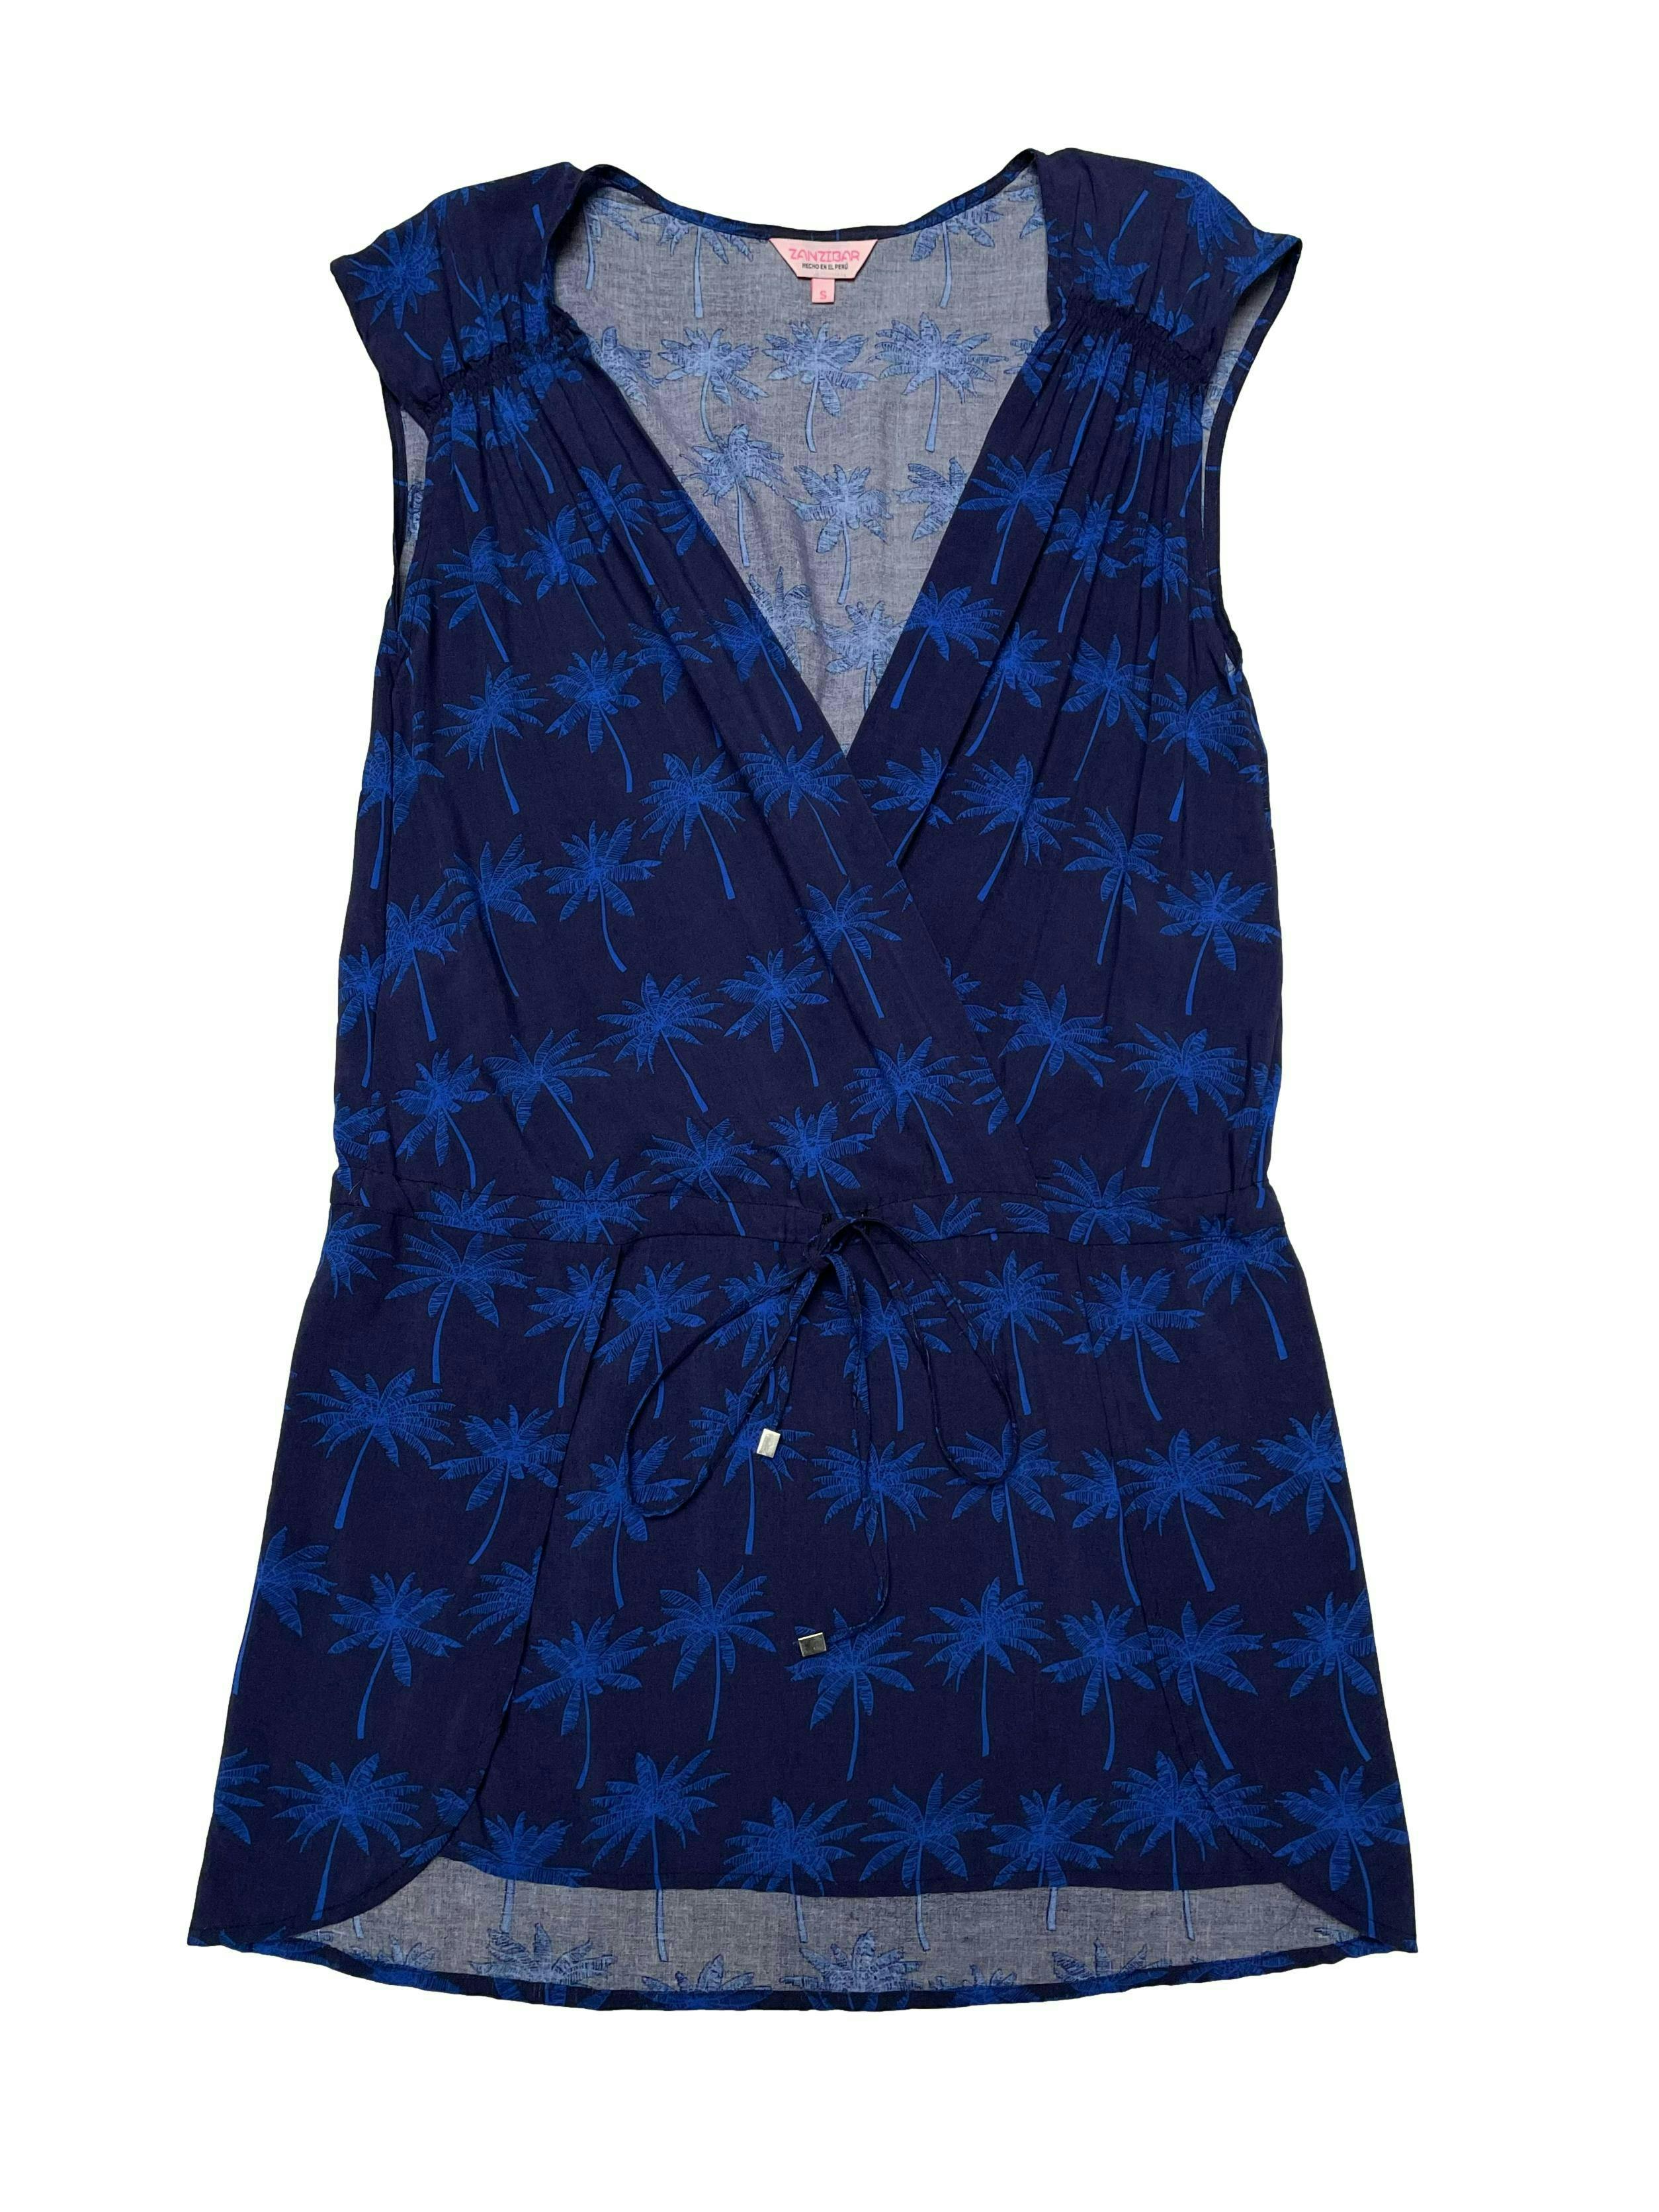 Vestido playero tipo chalis azul con print de palmeras, delantero cruzado, pasador para regular en cintura baja y aberturas laterales. Busto 94cm Largo 85cm. Nueva